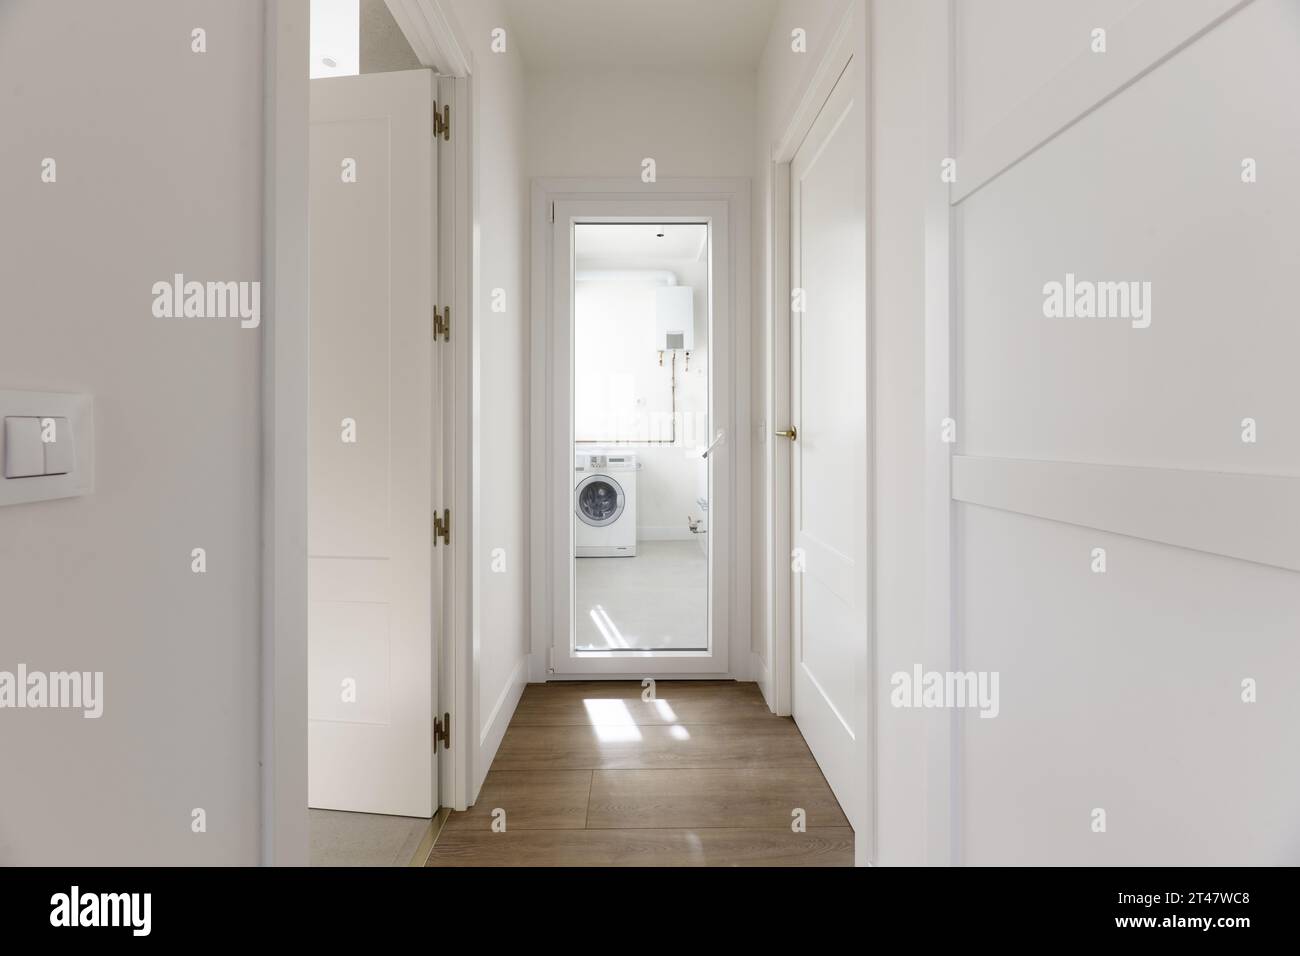 Couloir d'une maison résidentielle avec armoires encastrées sur mesure avec portes en bois laqué blanc, portes d'accès du même matériau et accès au soleil Banque D'Images